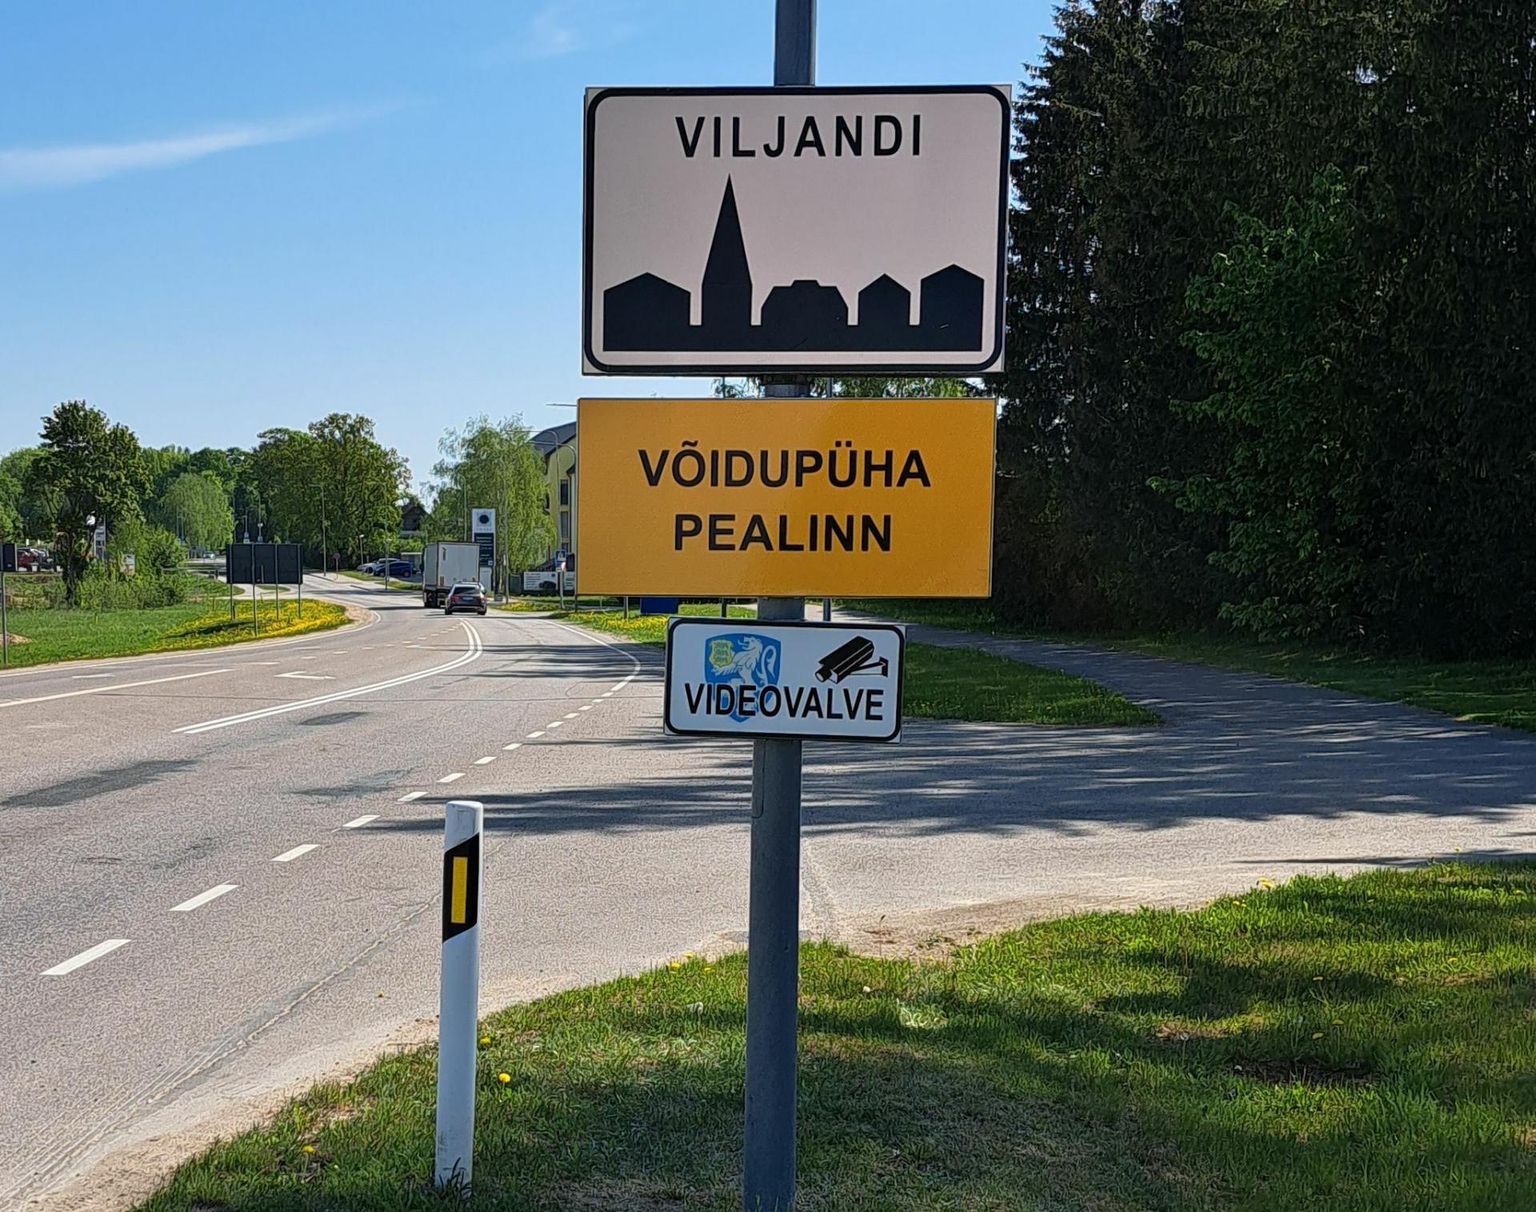 Viljandi sissesõitudele on üles pandud kollased lisatahvlid, mis annavad teada, et Viljandi on tänavune võidupüha pealinn.